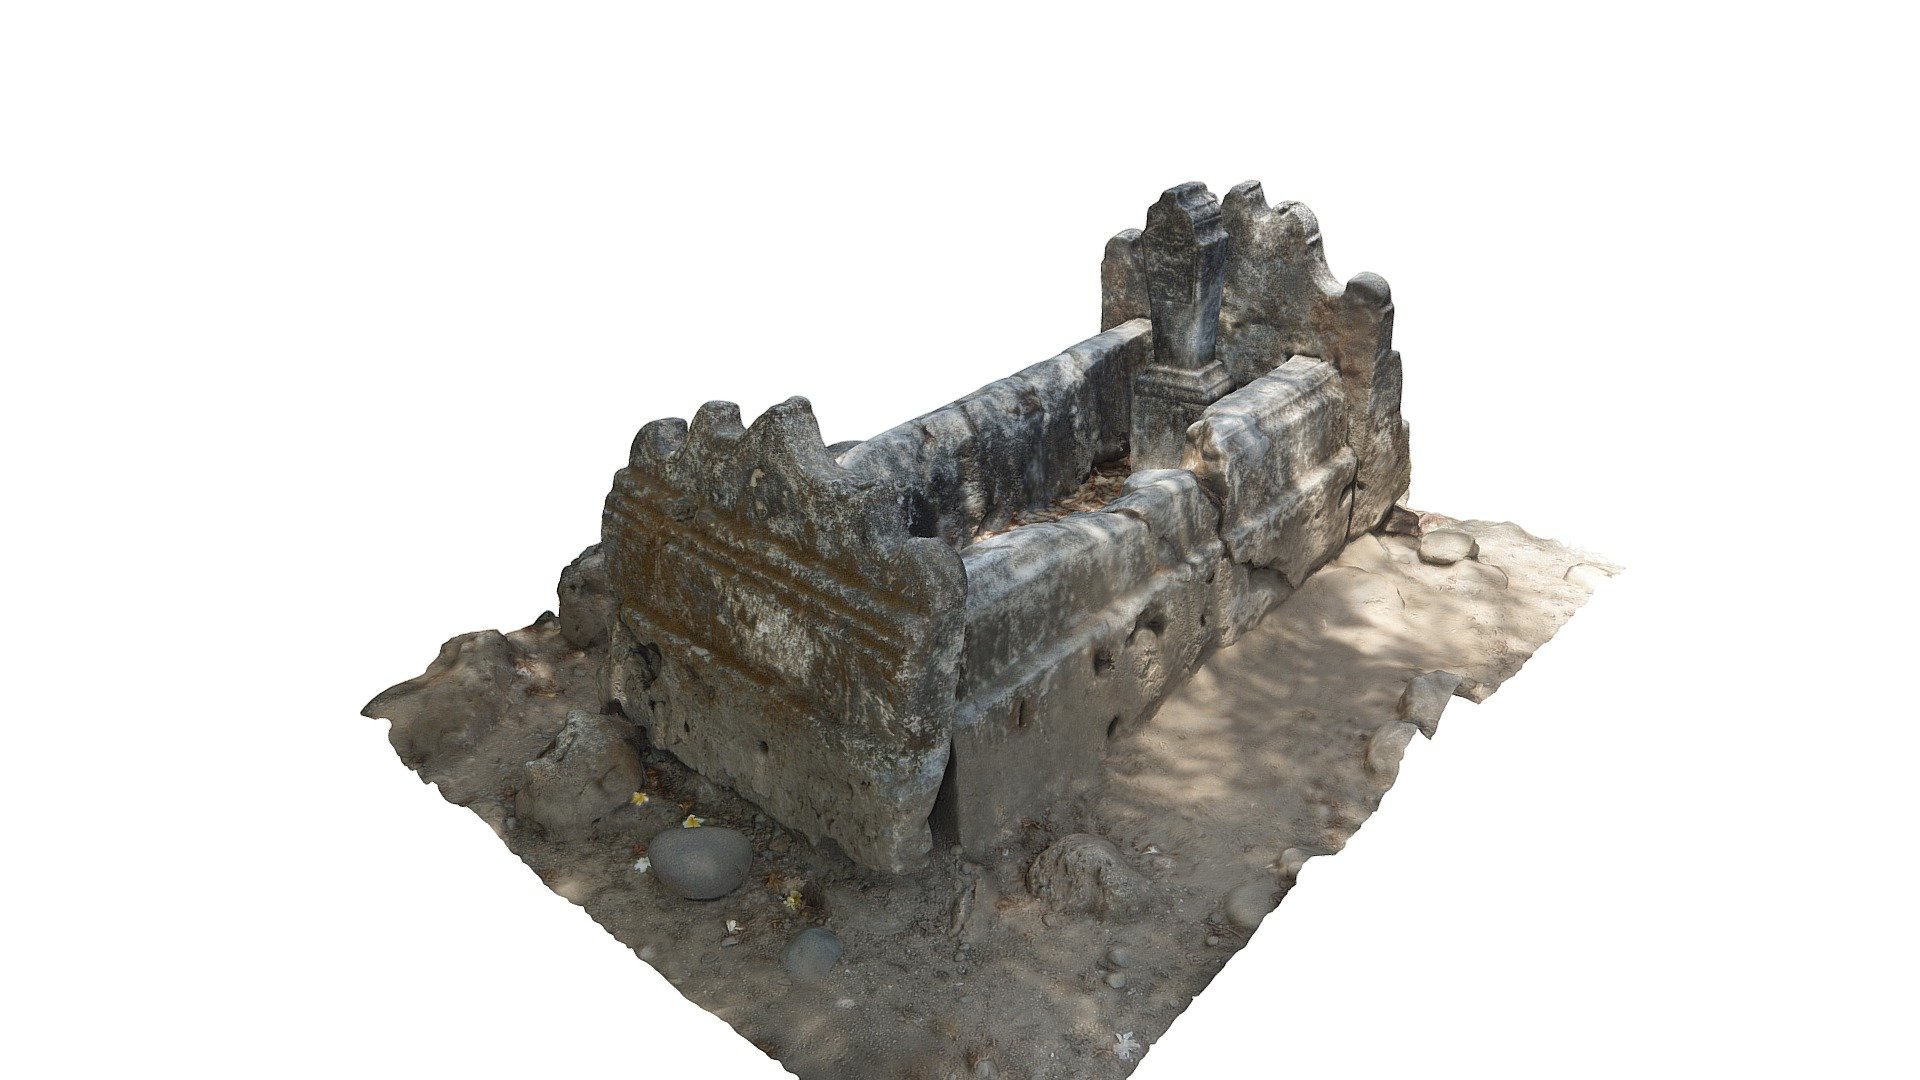 Situs Makam Kramat, Utan, Sumbawa, Indonesia - Makam Kramat, Object 3 - 3D model by Sumbawa Cultural Heritage (@sumbawa) 3d model